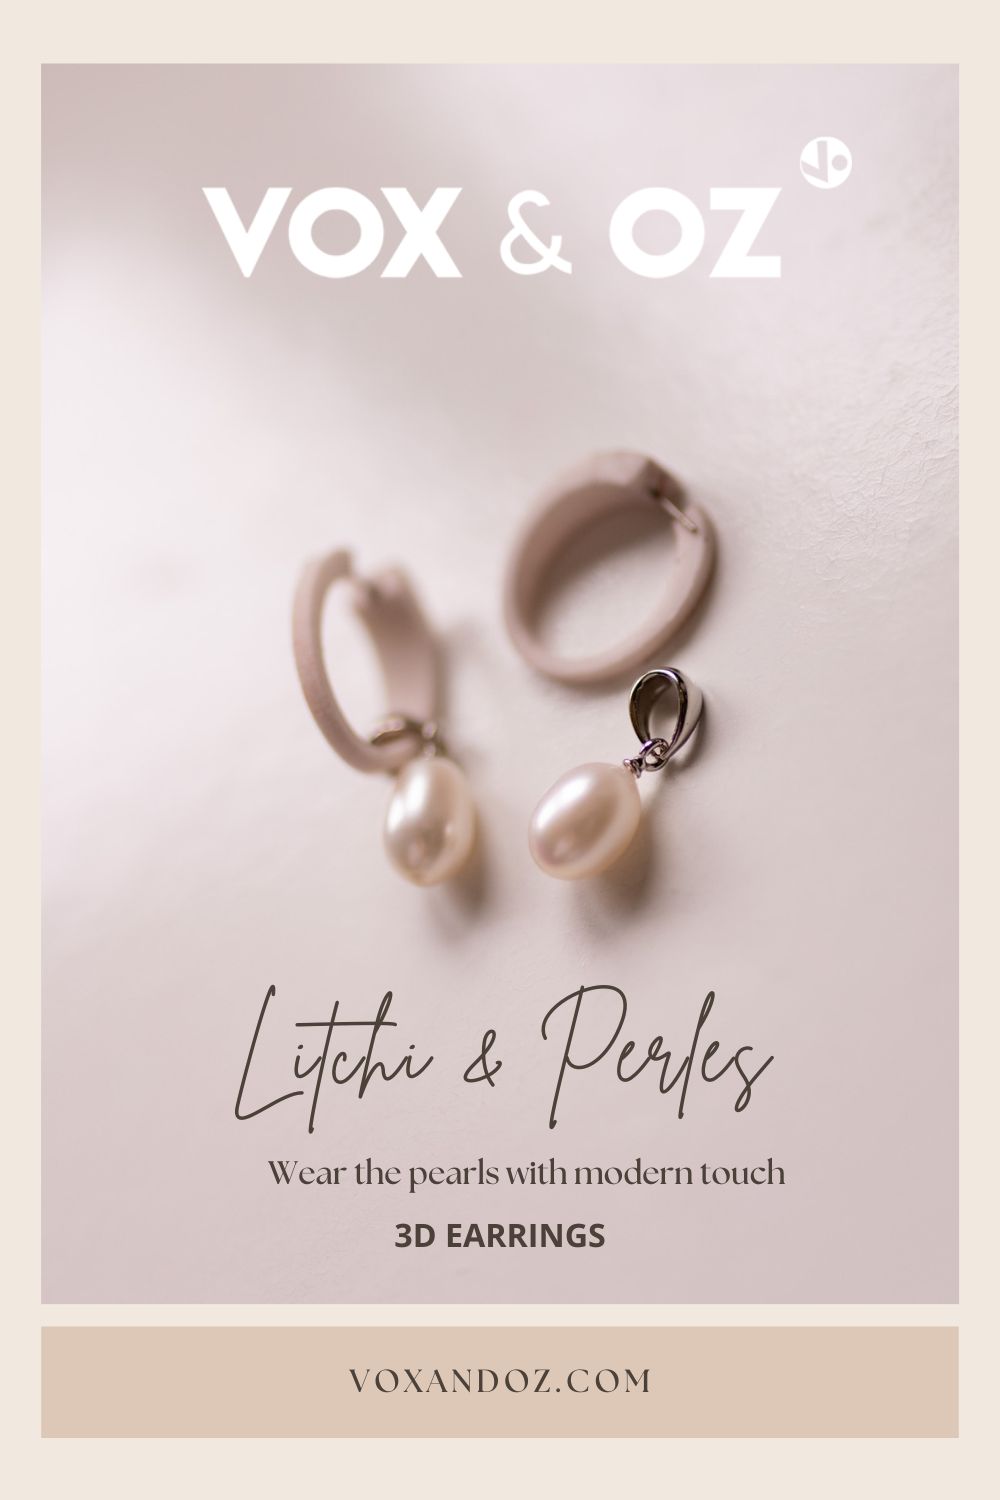 Boucles d'oreilles et perles. Porter la perle de facon moderne. Wear the perlas with modern touch. Jolie boucles d'oreilles pendantes avec perles ivoires de Vox & Oz.